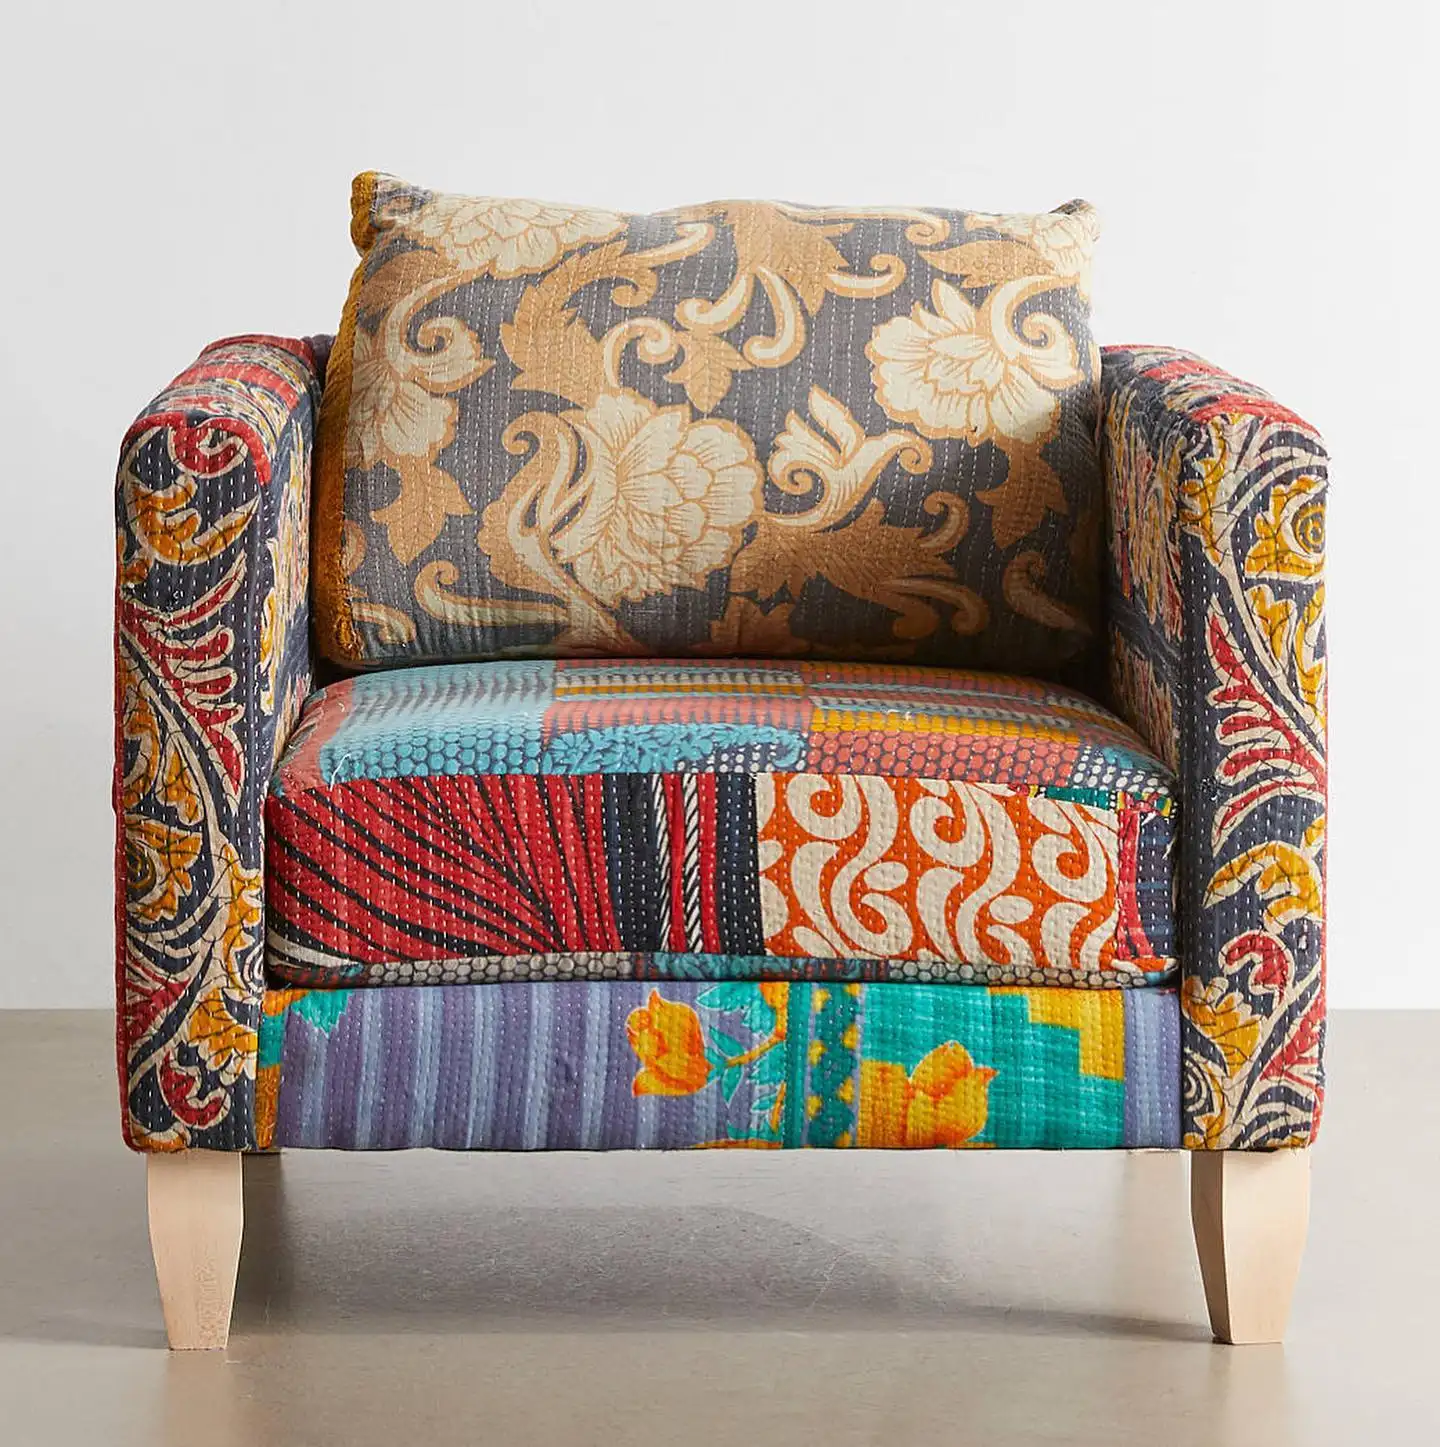 Son Modern tasarım çok renkli Premium Kantha İşi lüks tek kişilik kanepe oturma odası dekorasyon için toptan